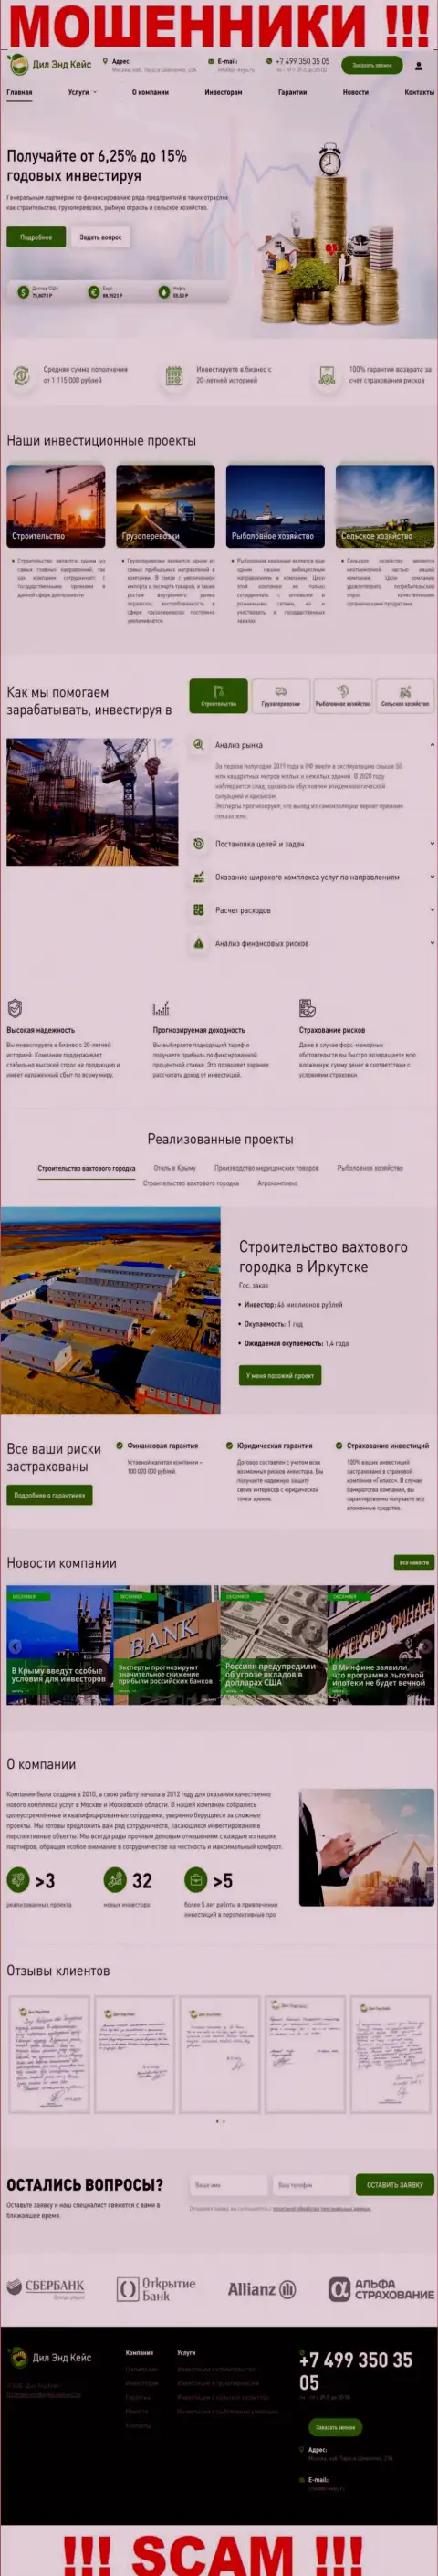 Сайт компании Dil-Keys Ru, забитый ложной информацией